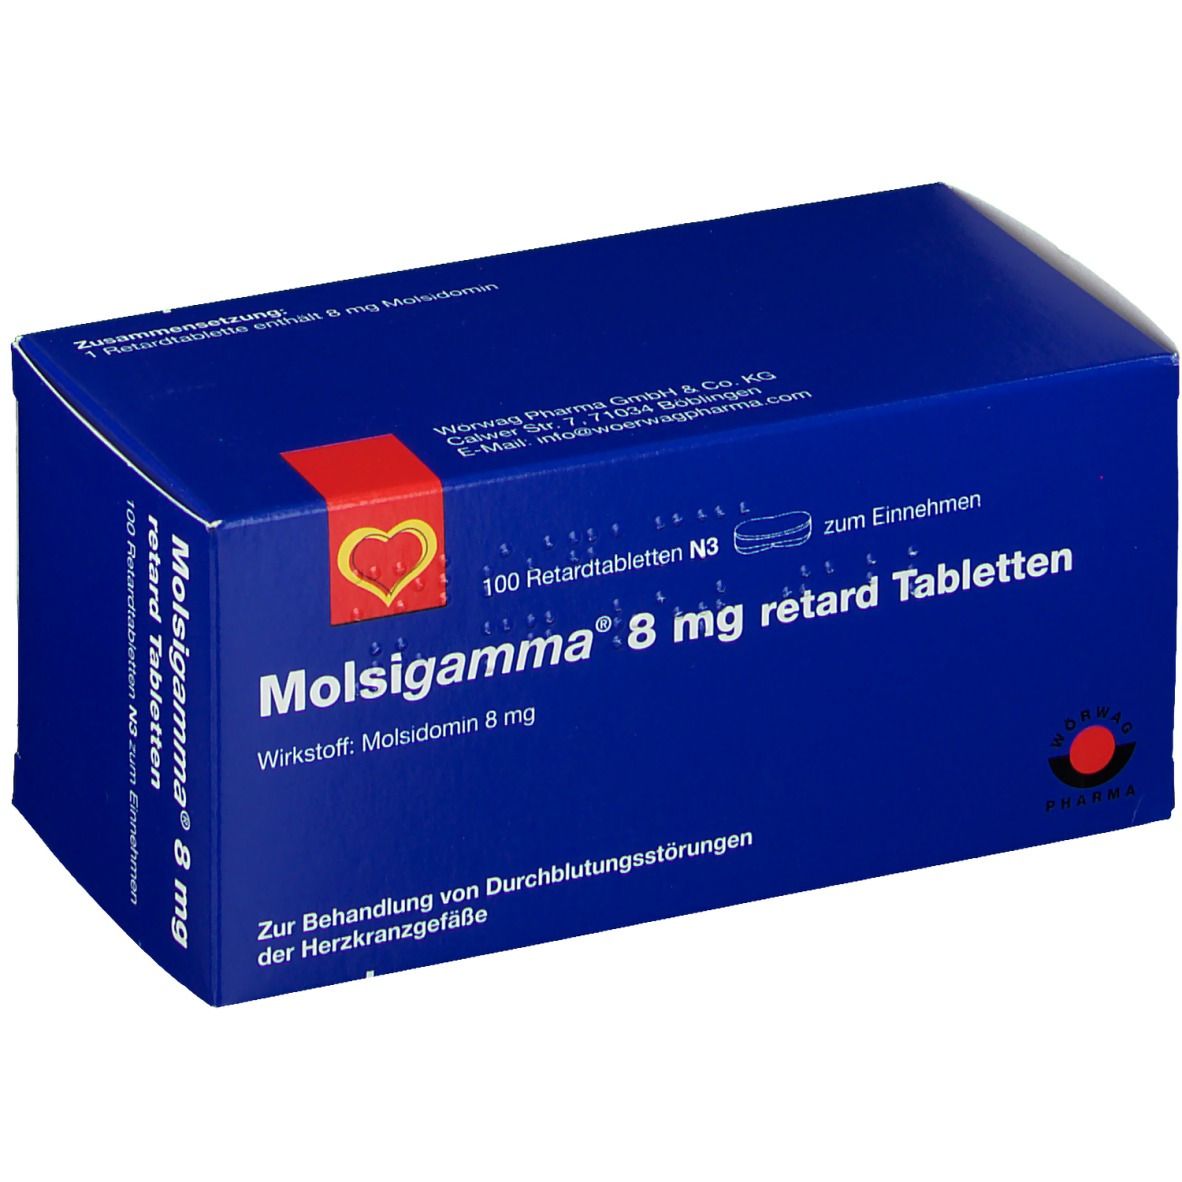 MOLSIGAMMA 8 mg Retardtabletten